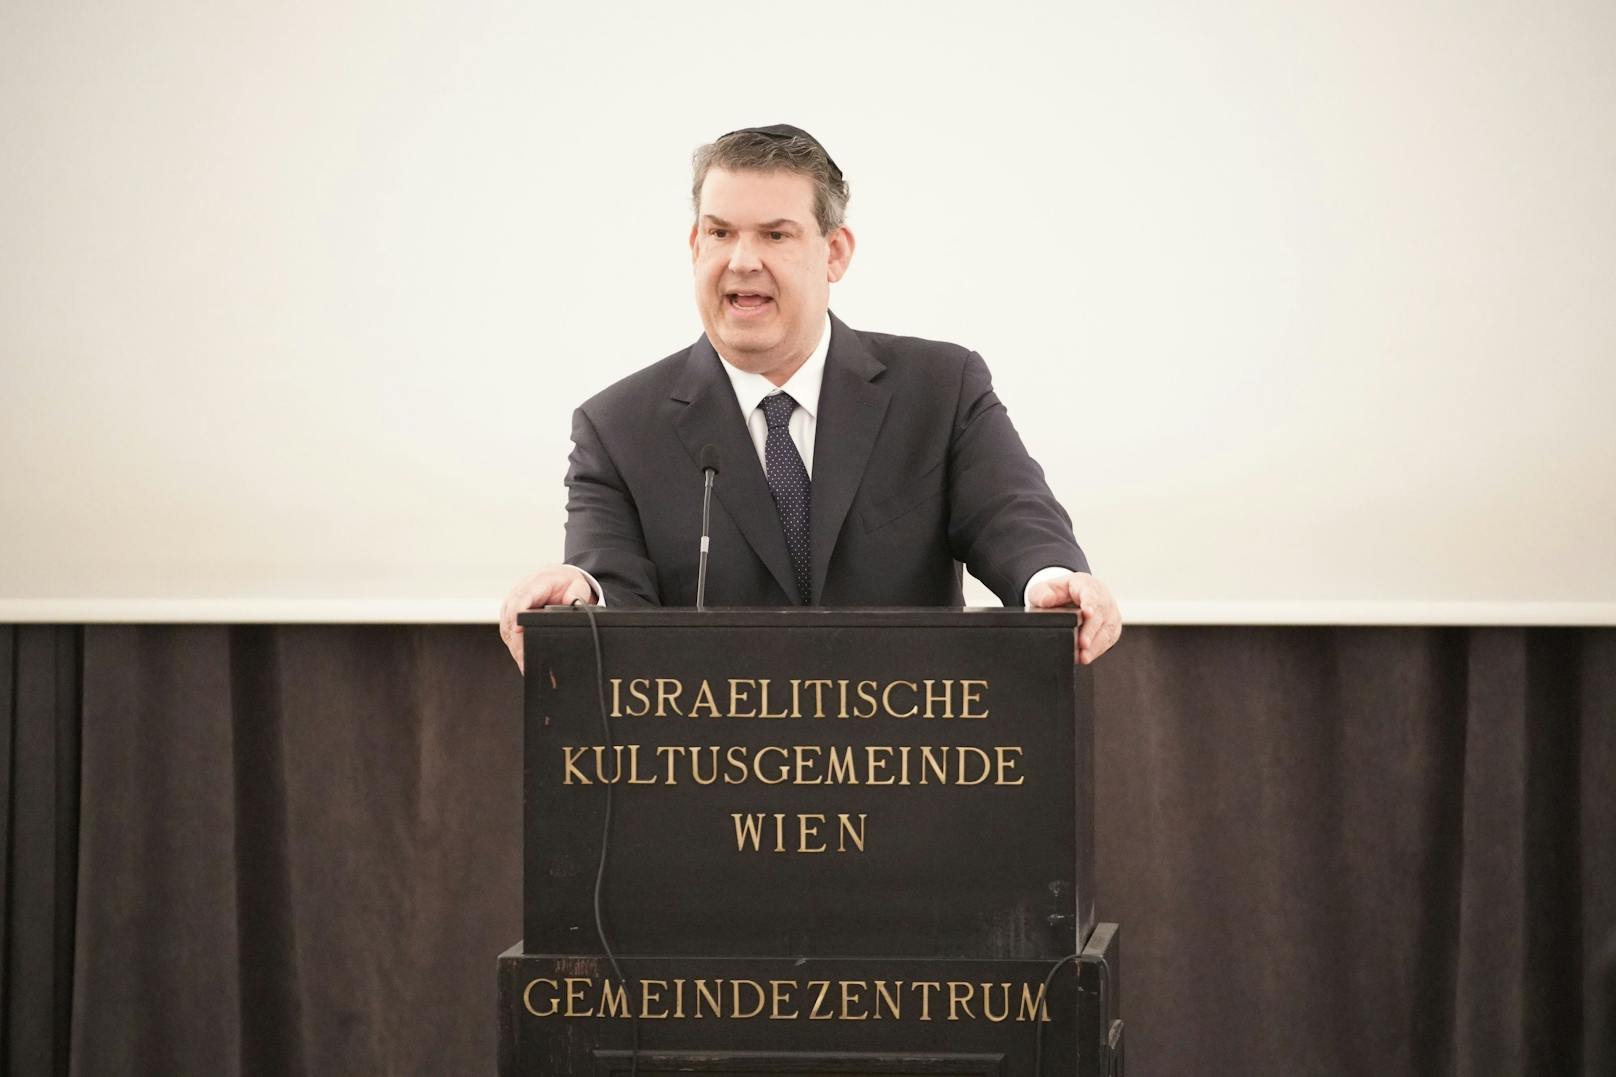 Gewürdigt wurde heuer besonderes Engagement für die Gedenkkultur, erklärte der Präsident der Israelitischen Kultusgemeinde Wien (IKG), <strong>Oskar Deutsch.</strong>